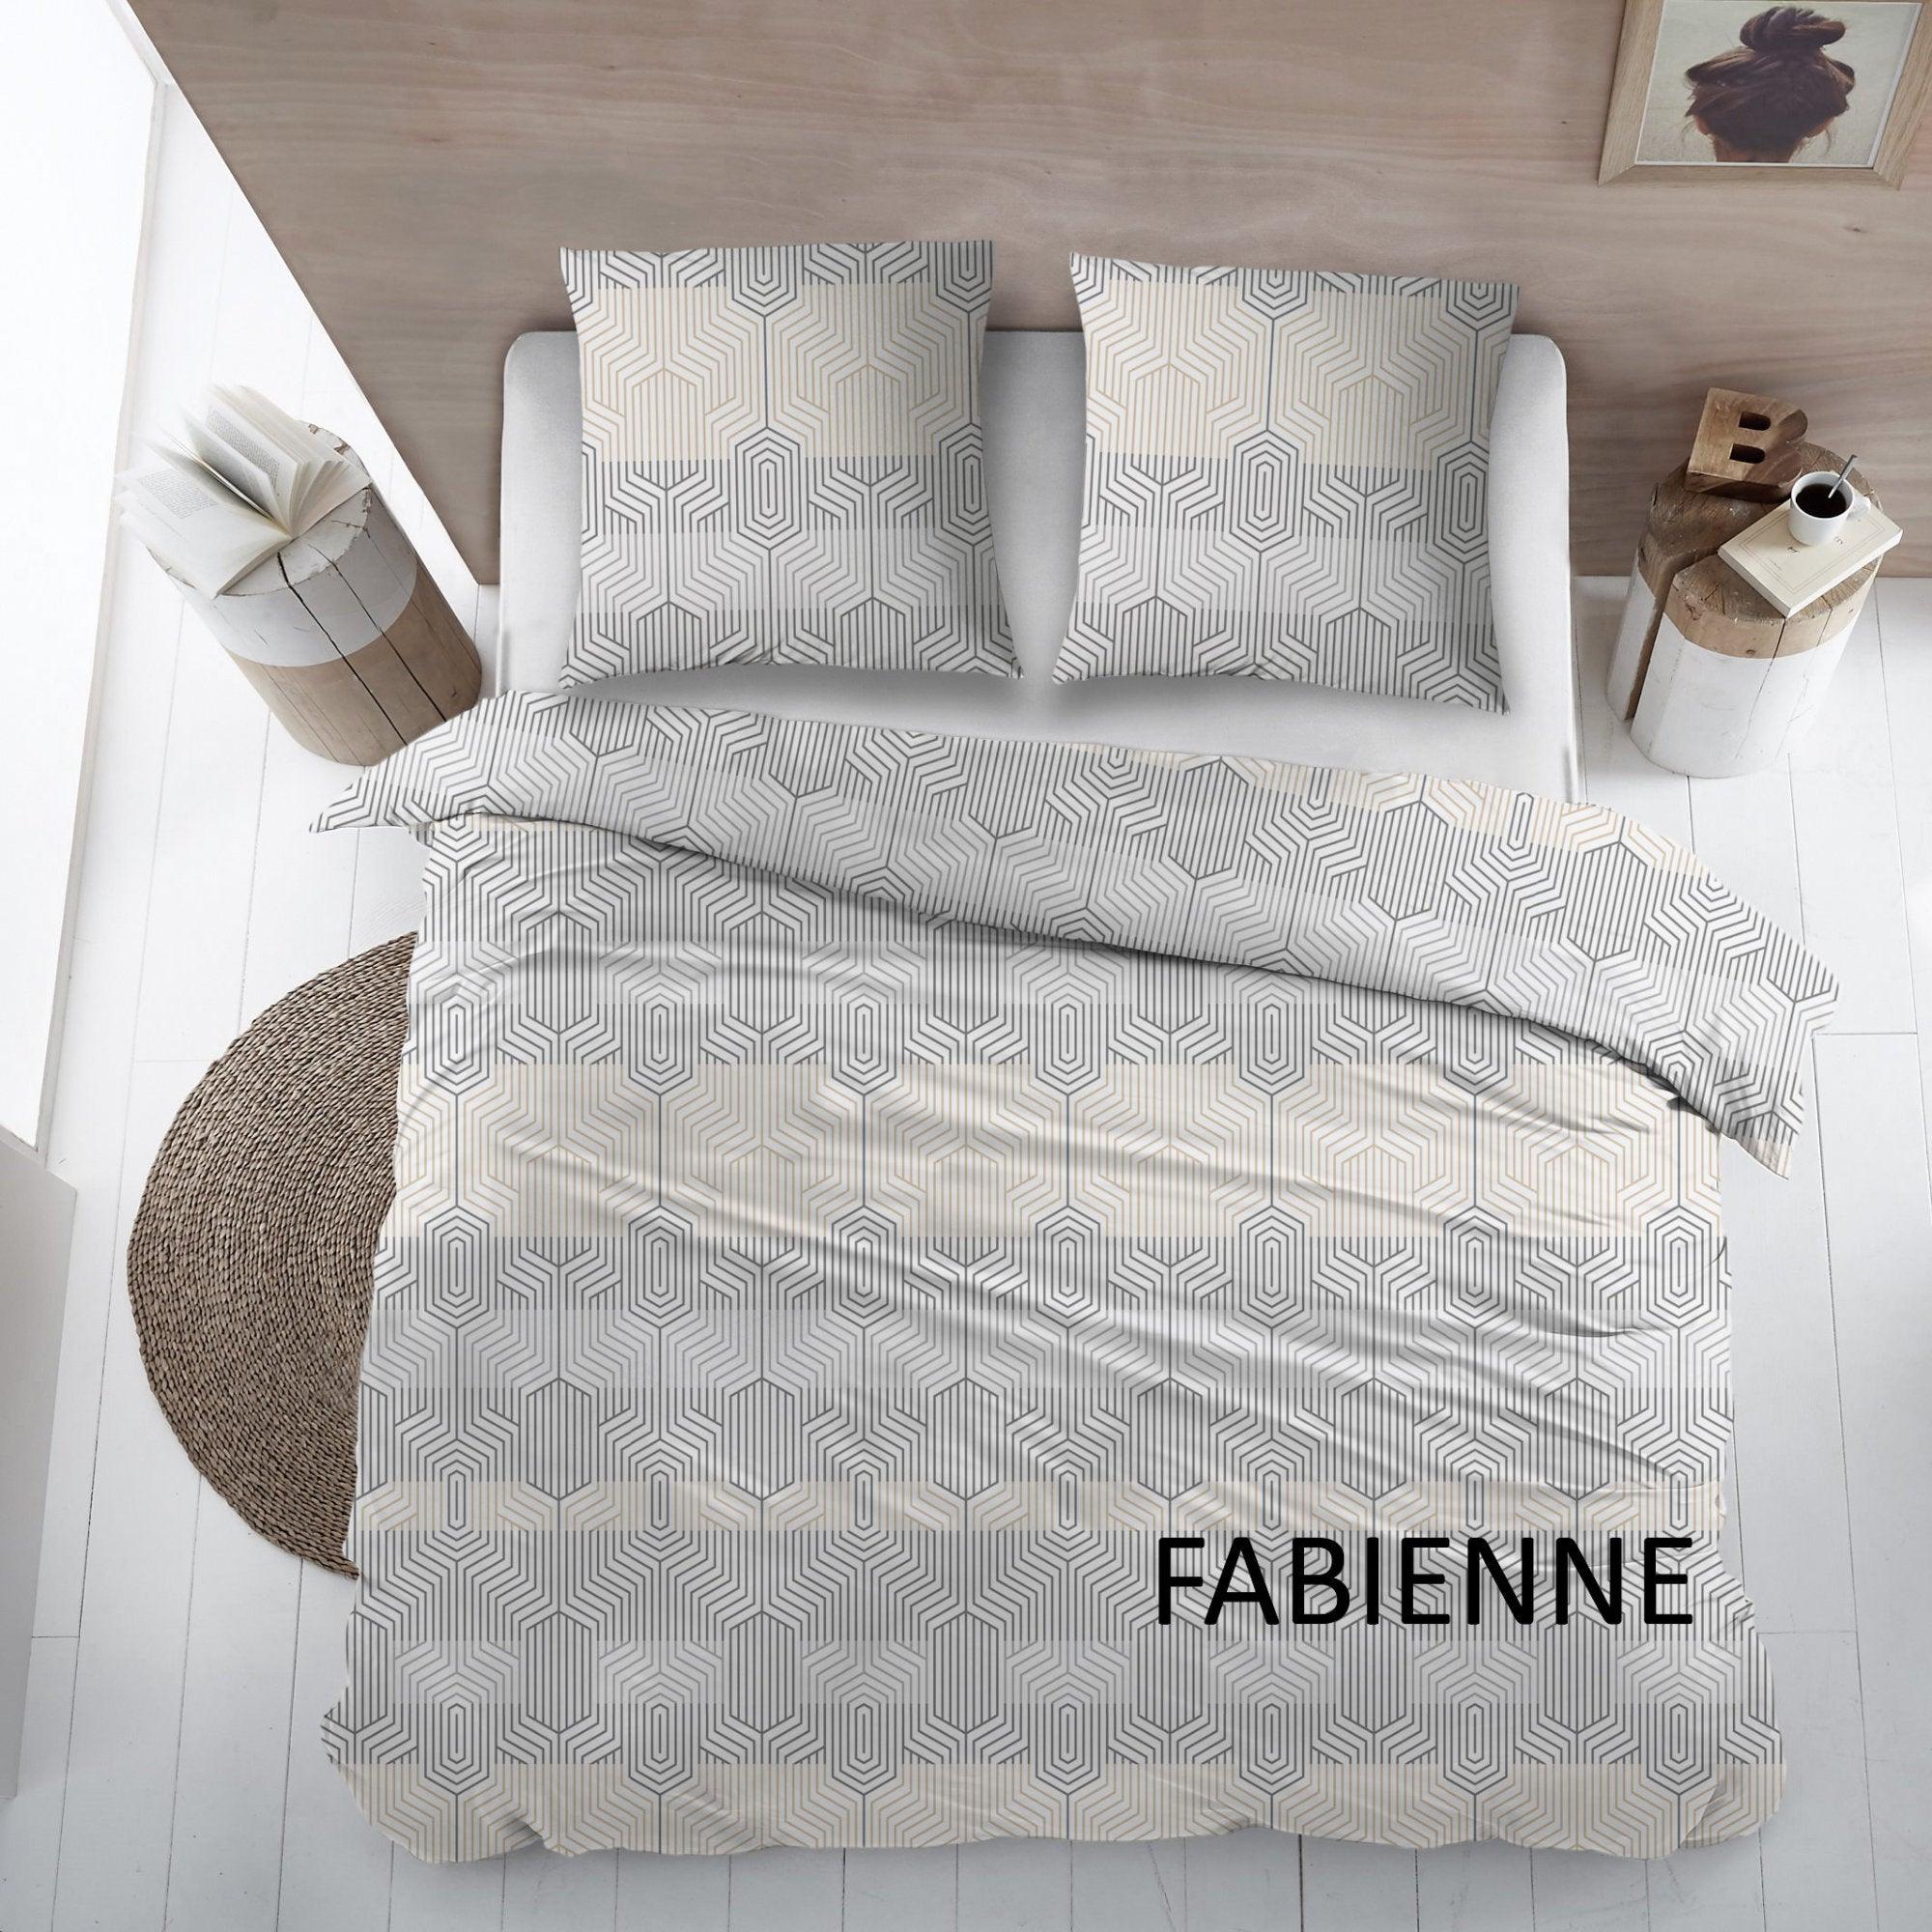 Cottons Lakenset Fabienne Flanel